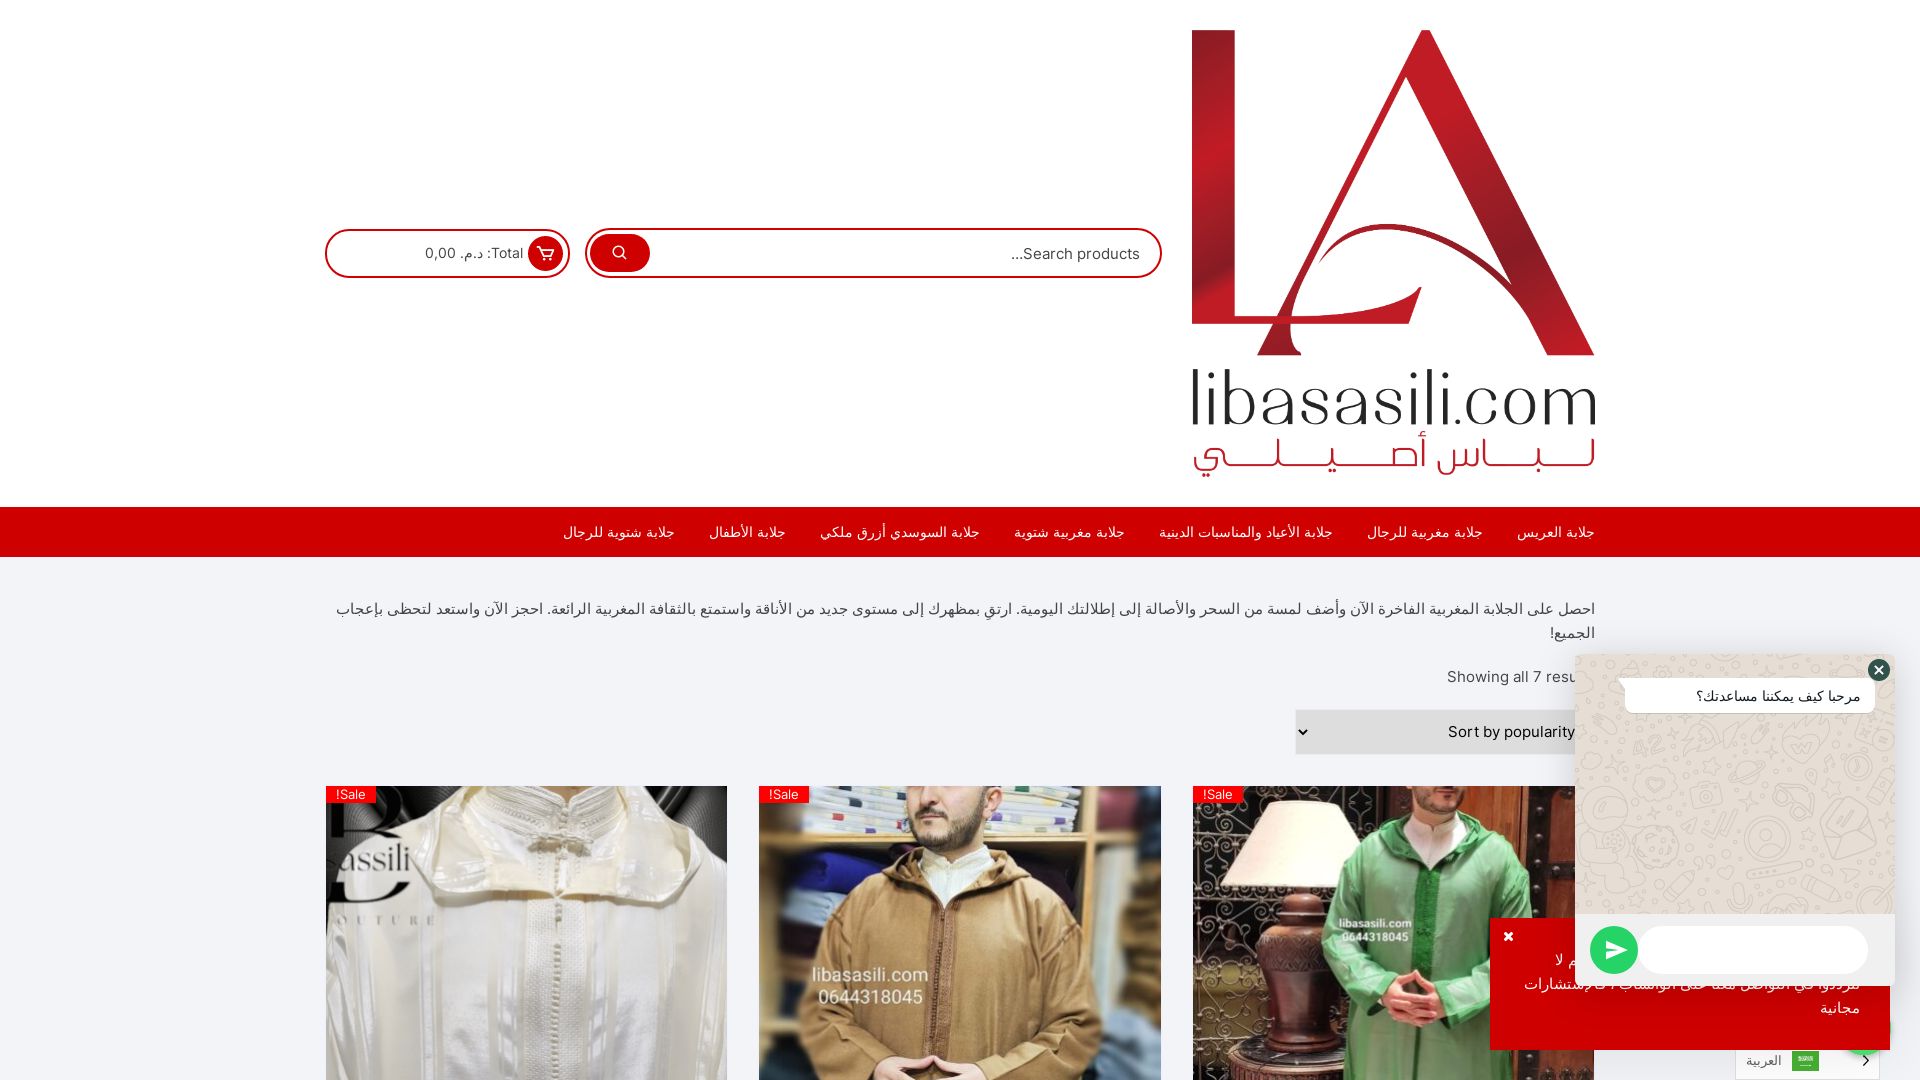 État du site web libasasili.com est   EN LIGNE